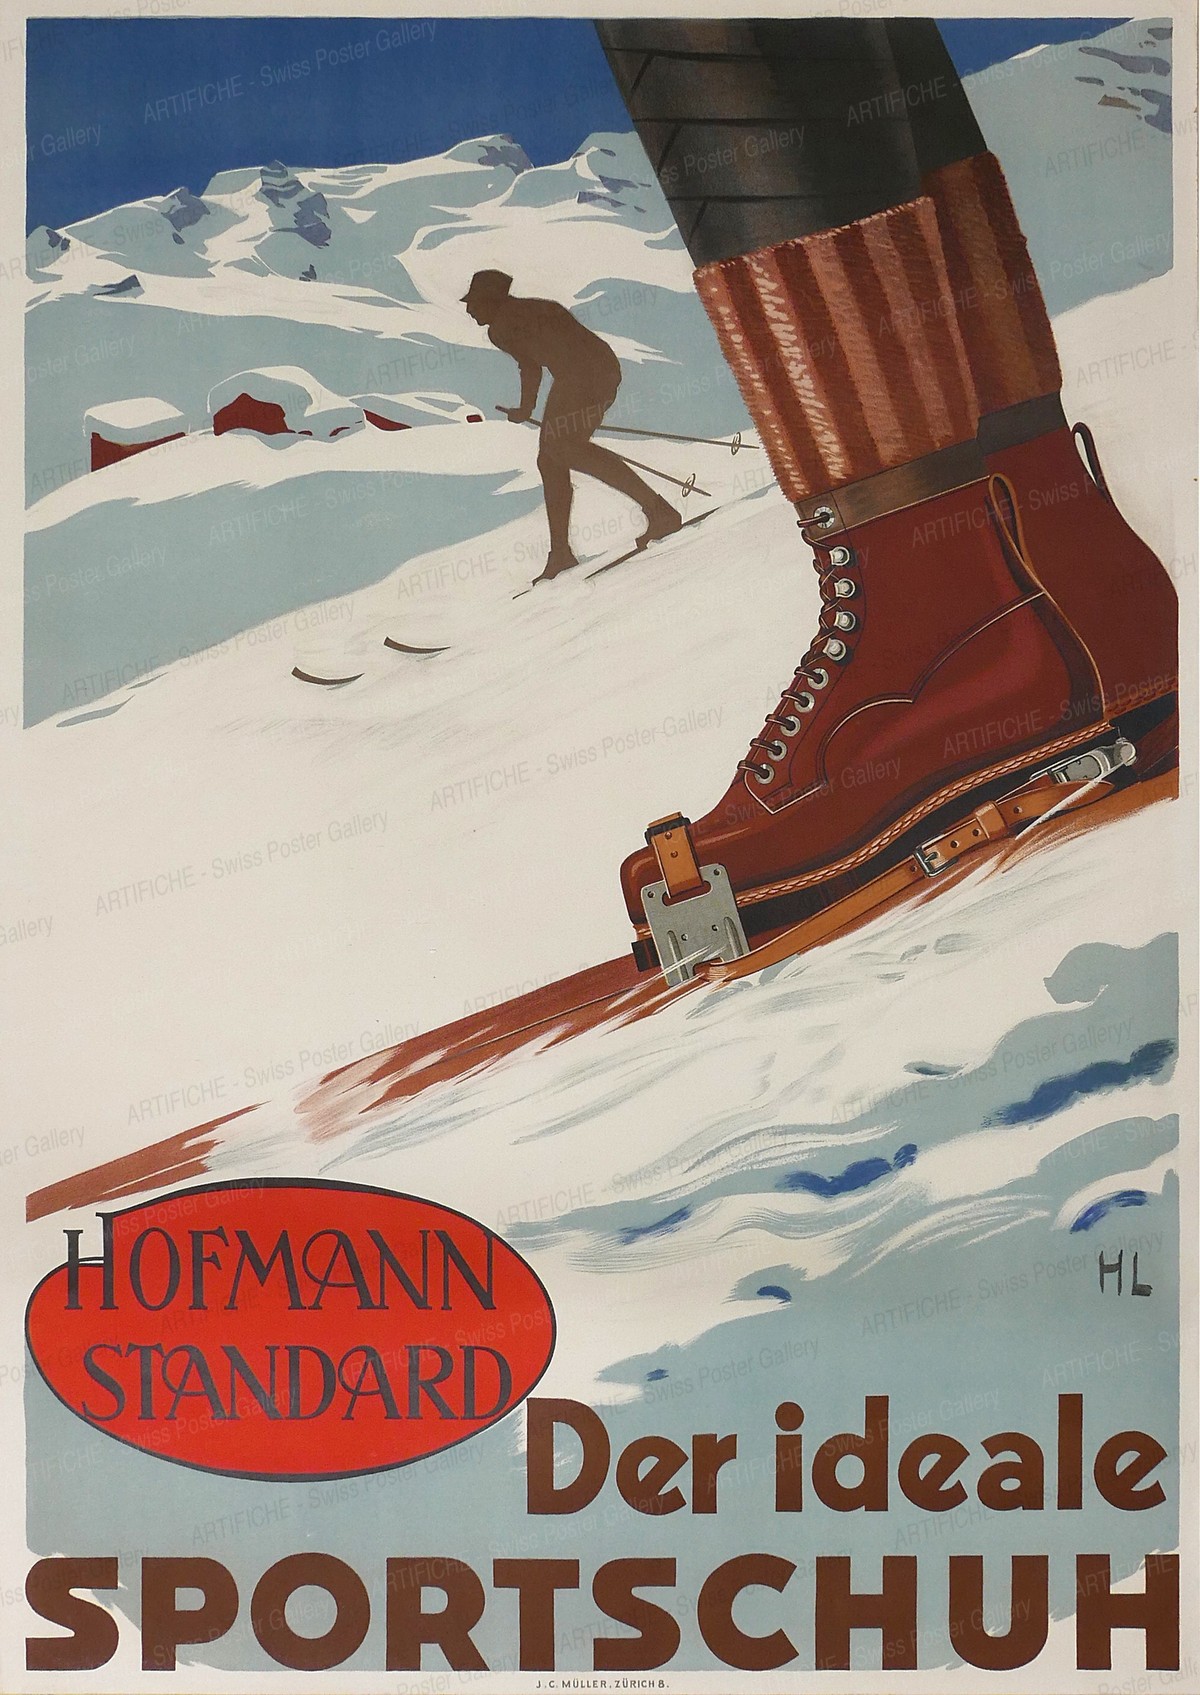 Hofmann Standard – the ideal sports shoe, Hans Lehmann